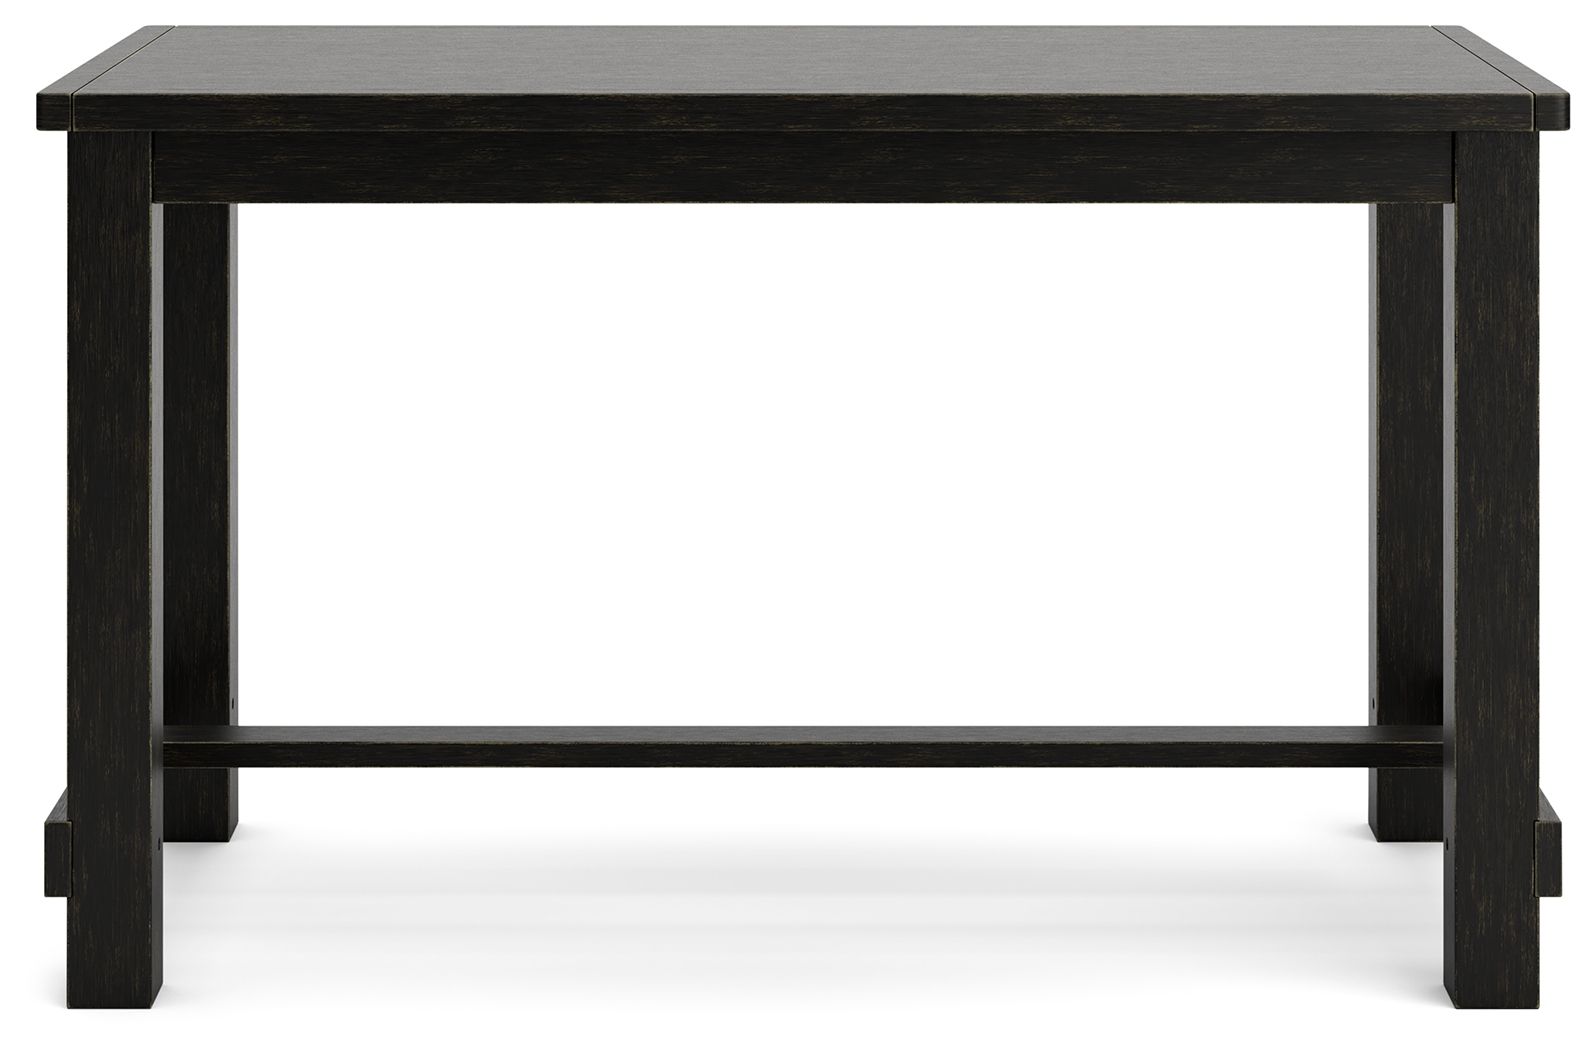 Jeanette - Linen / Black - 5 Pc. - Counter Table, 4 Upholstered Barstools